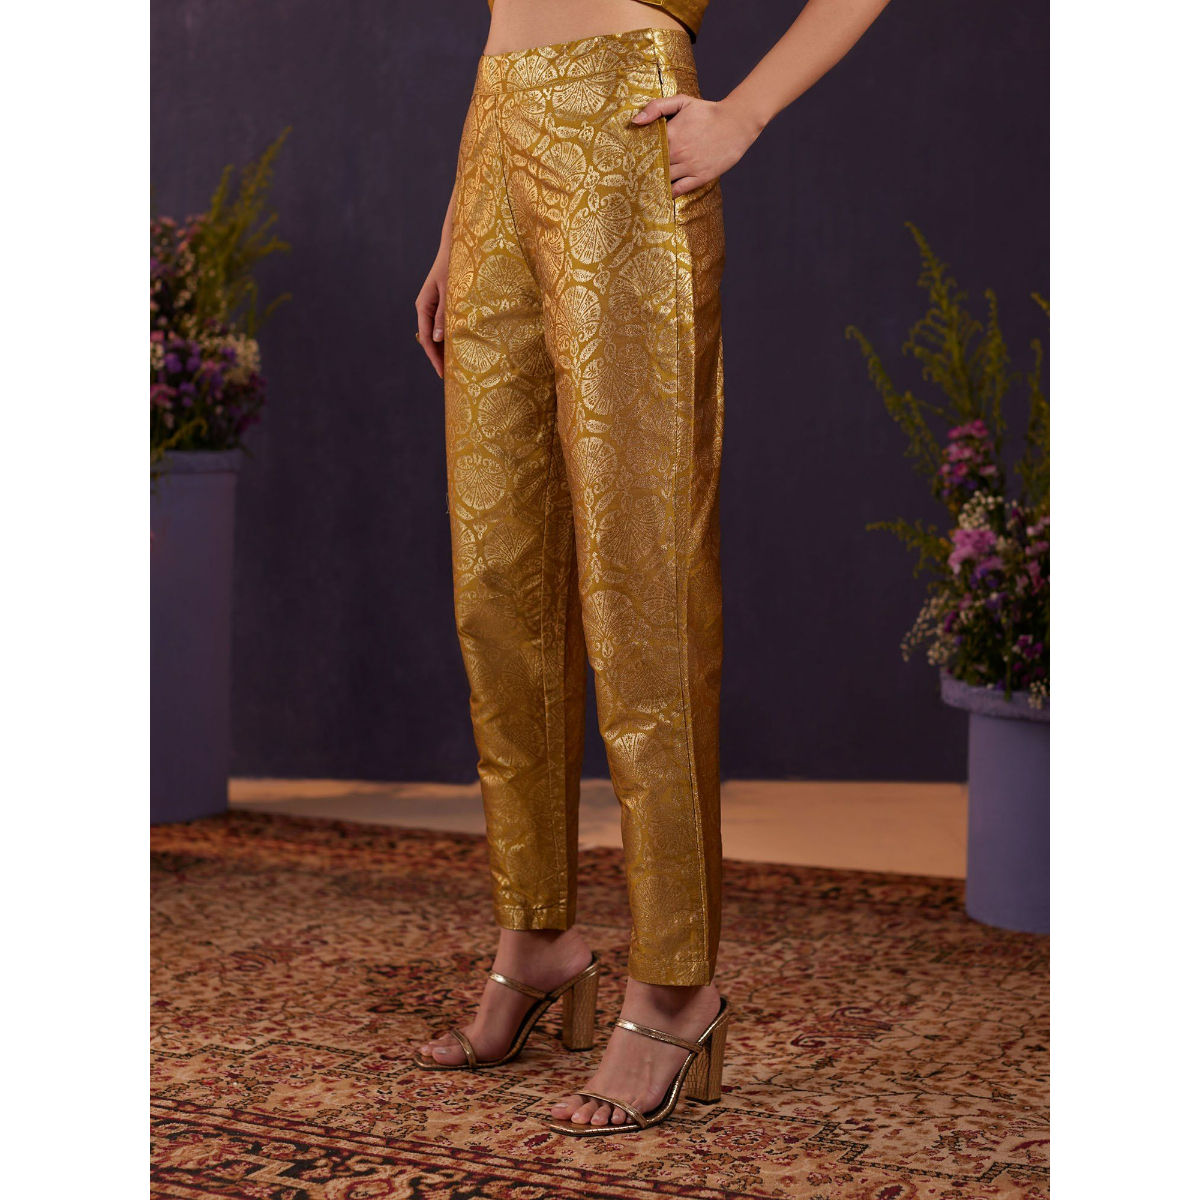 Brocade Pant in Golden : TJW1639